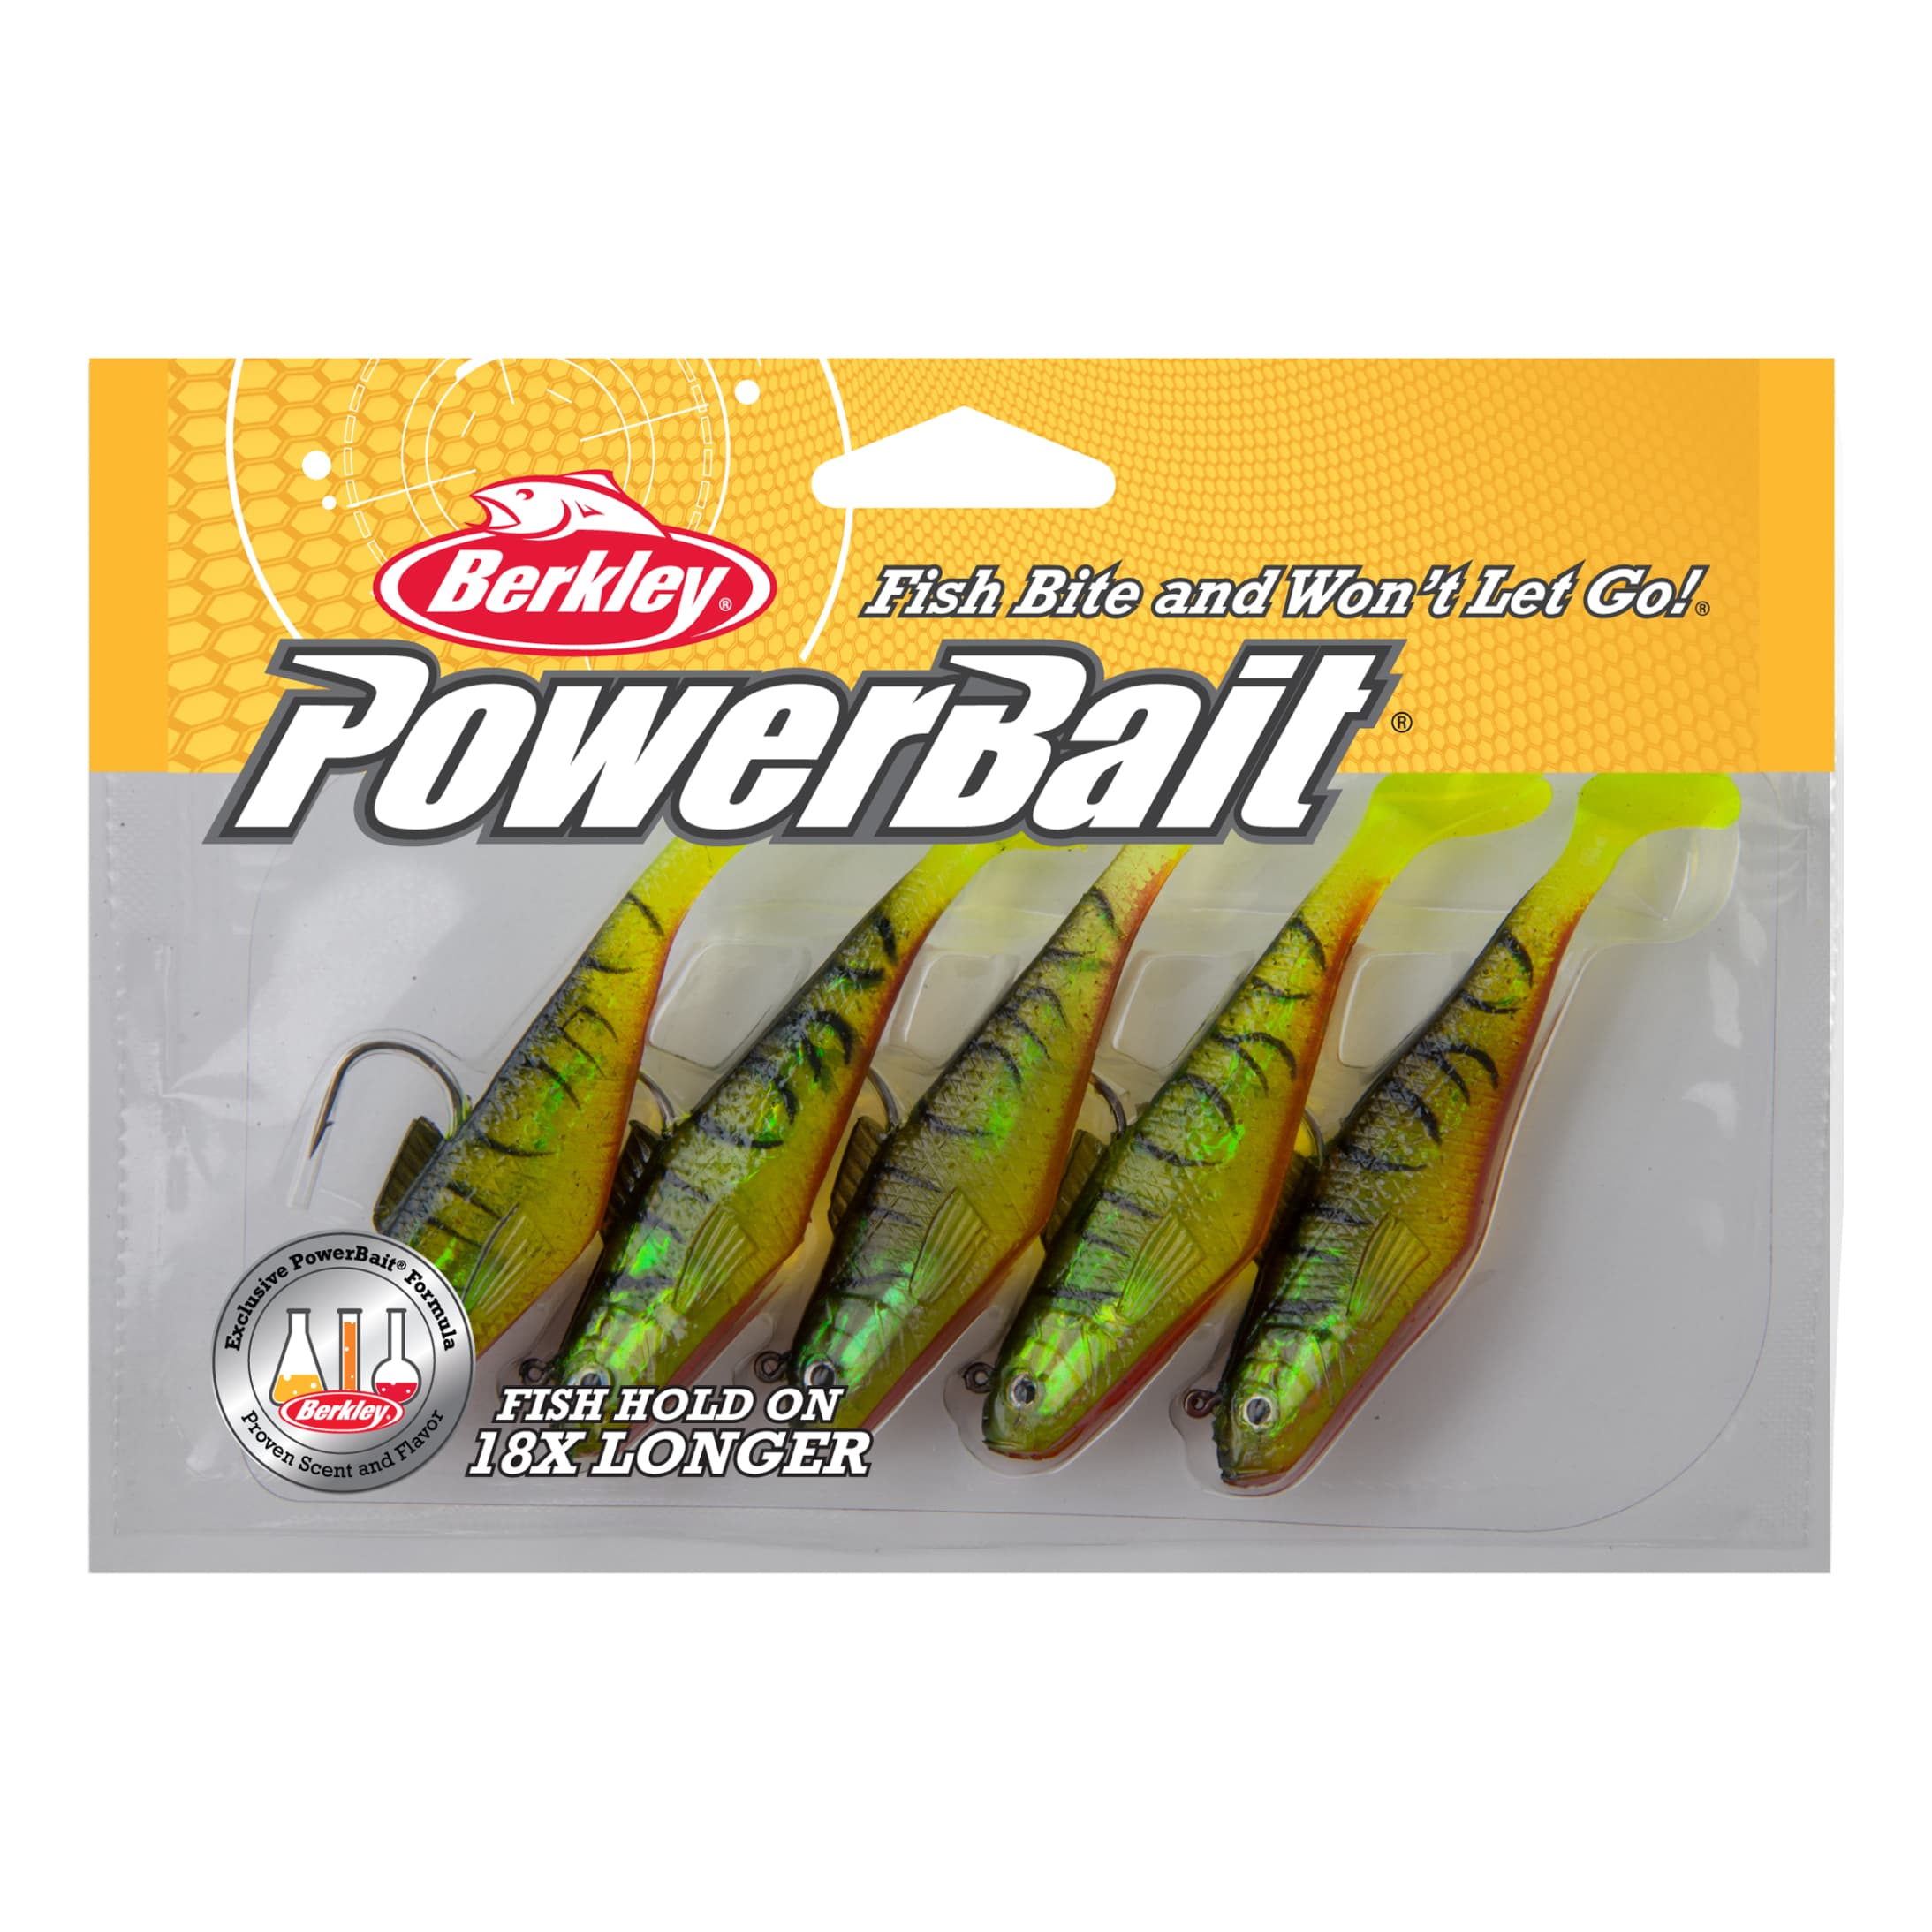 PowerBait® Trout Bait - Bait & Lures, Berkley